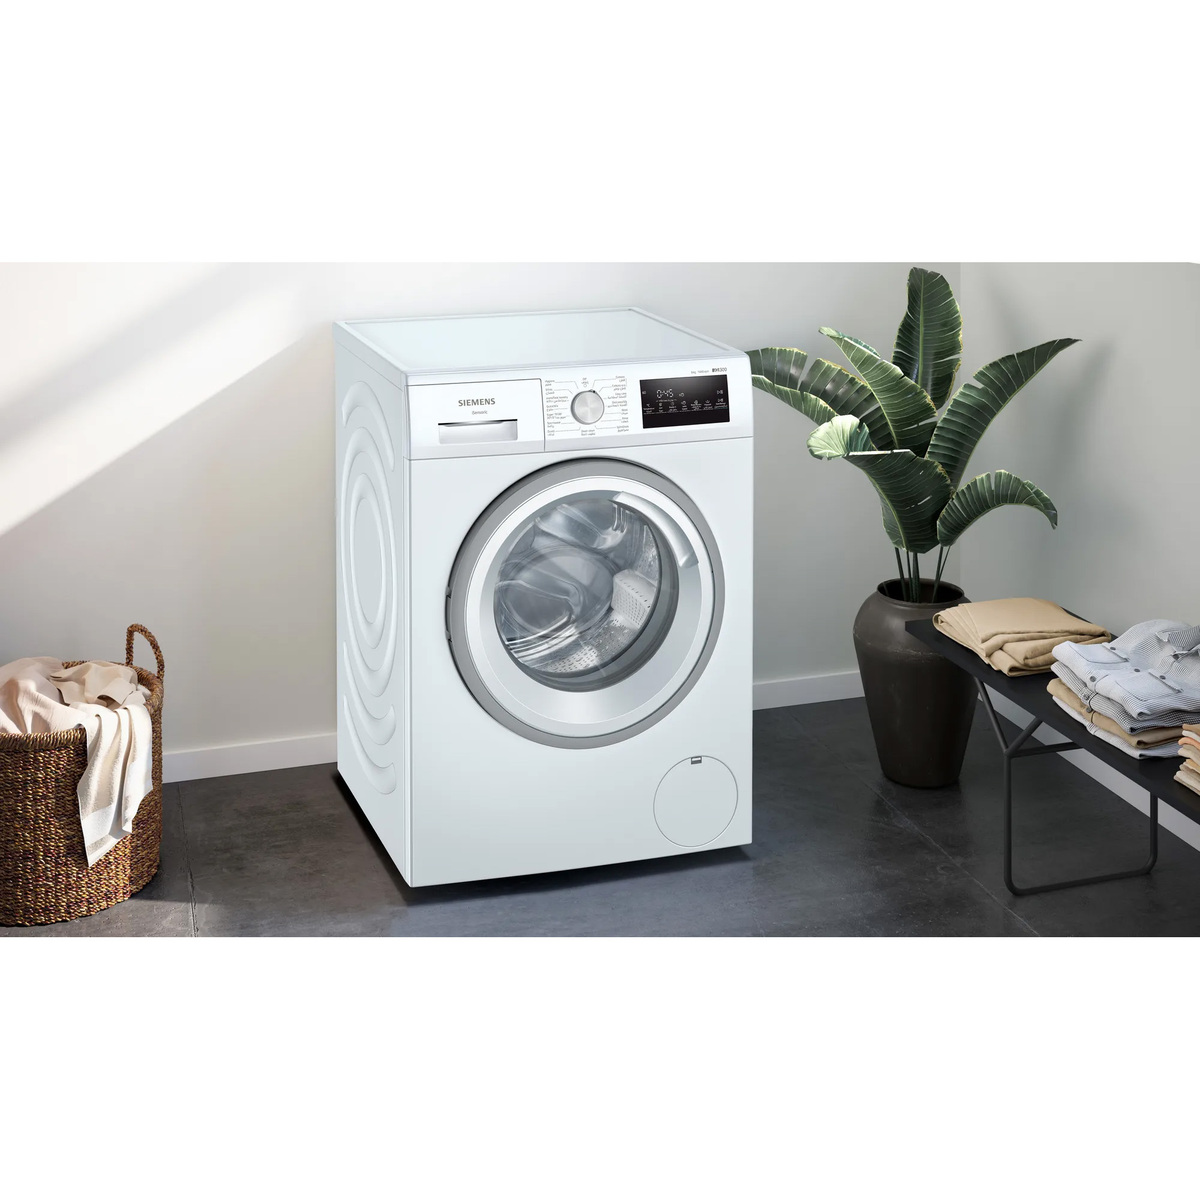 Siemens iQ300 Front Load Washing Machine, 8 kg, 1400 RPM, White, WM14U280GC